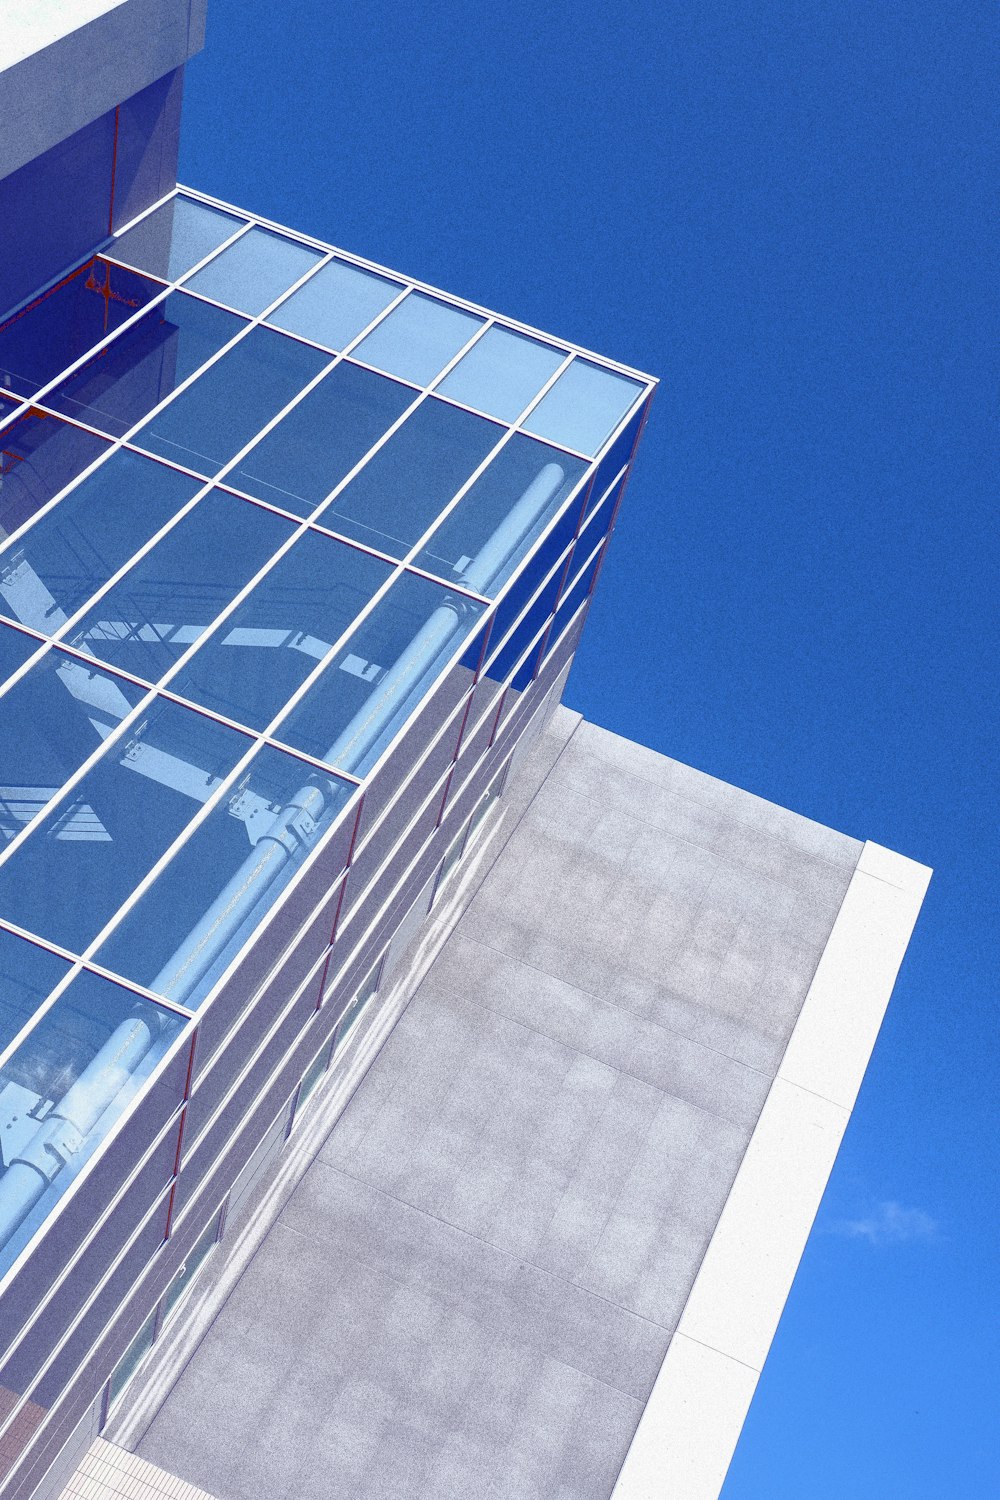 Fotografia dal basso di un grattacielo con pareti in vetro bianco e blu